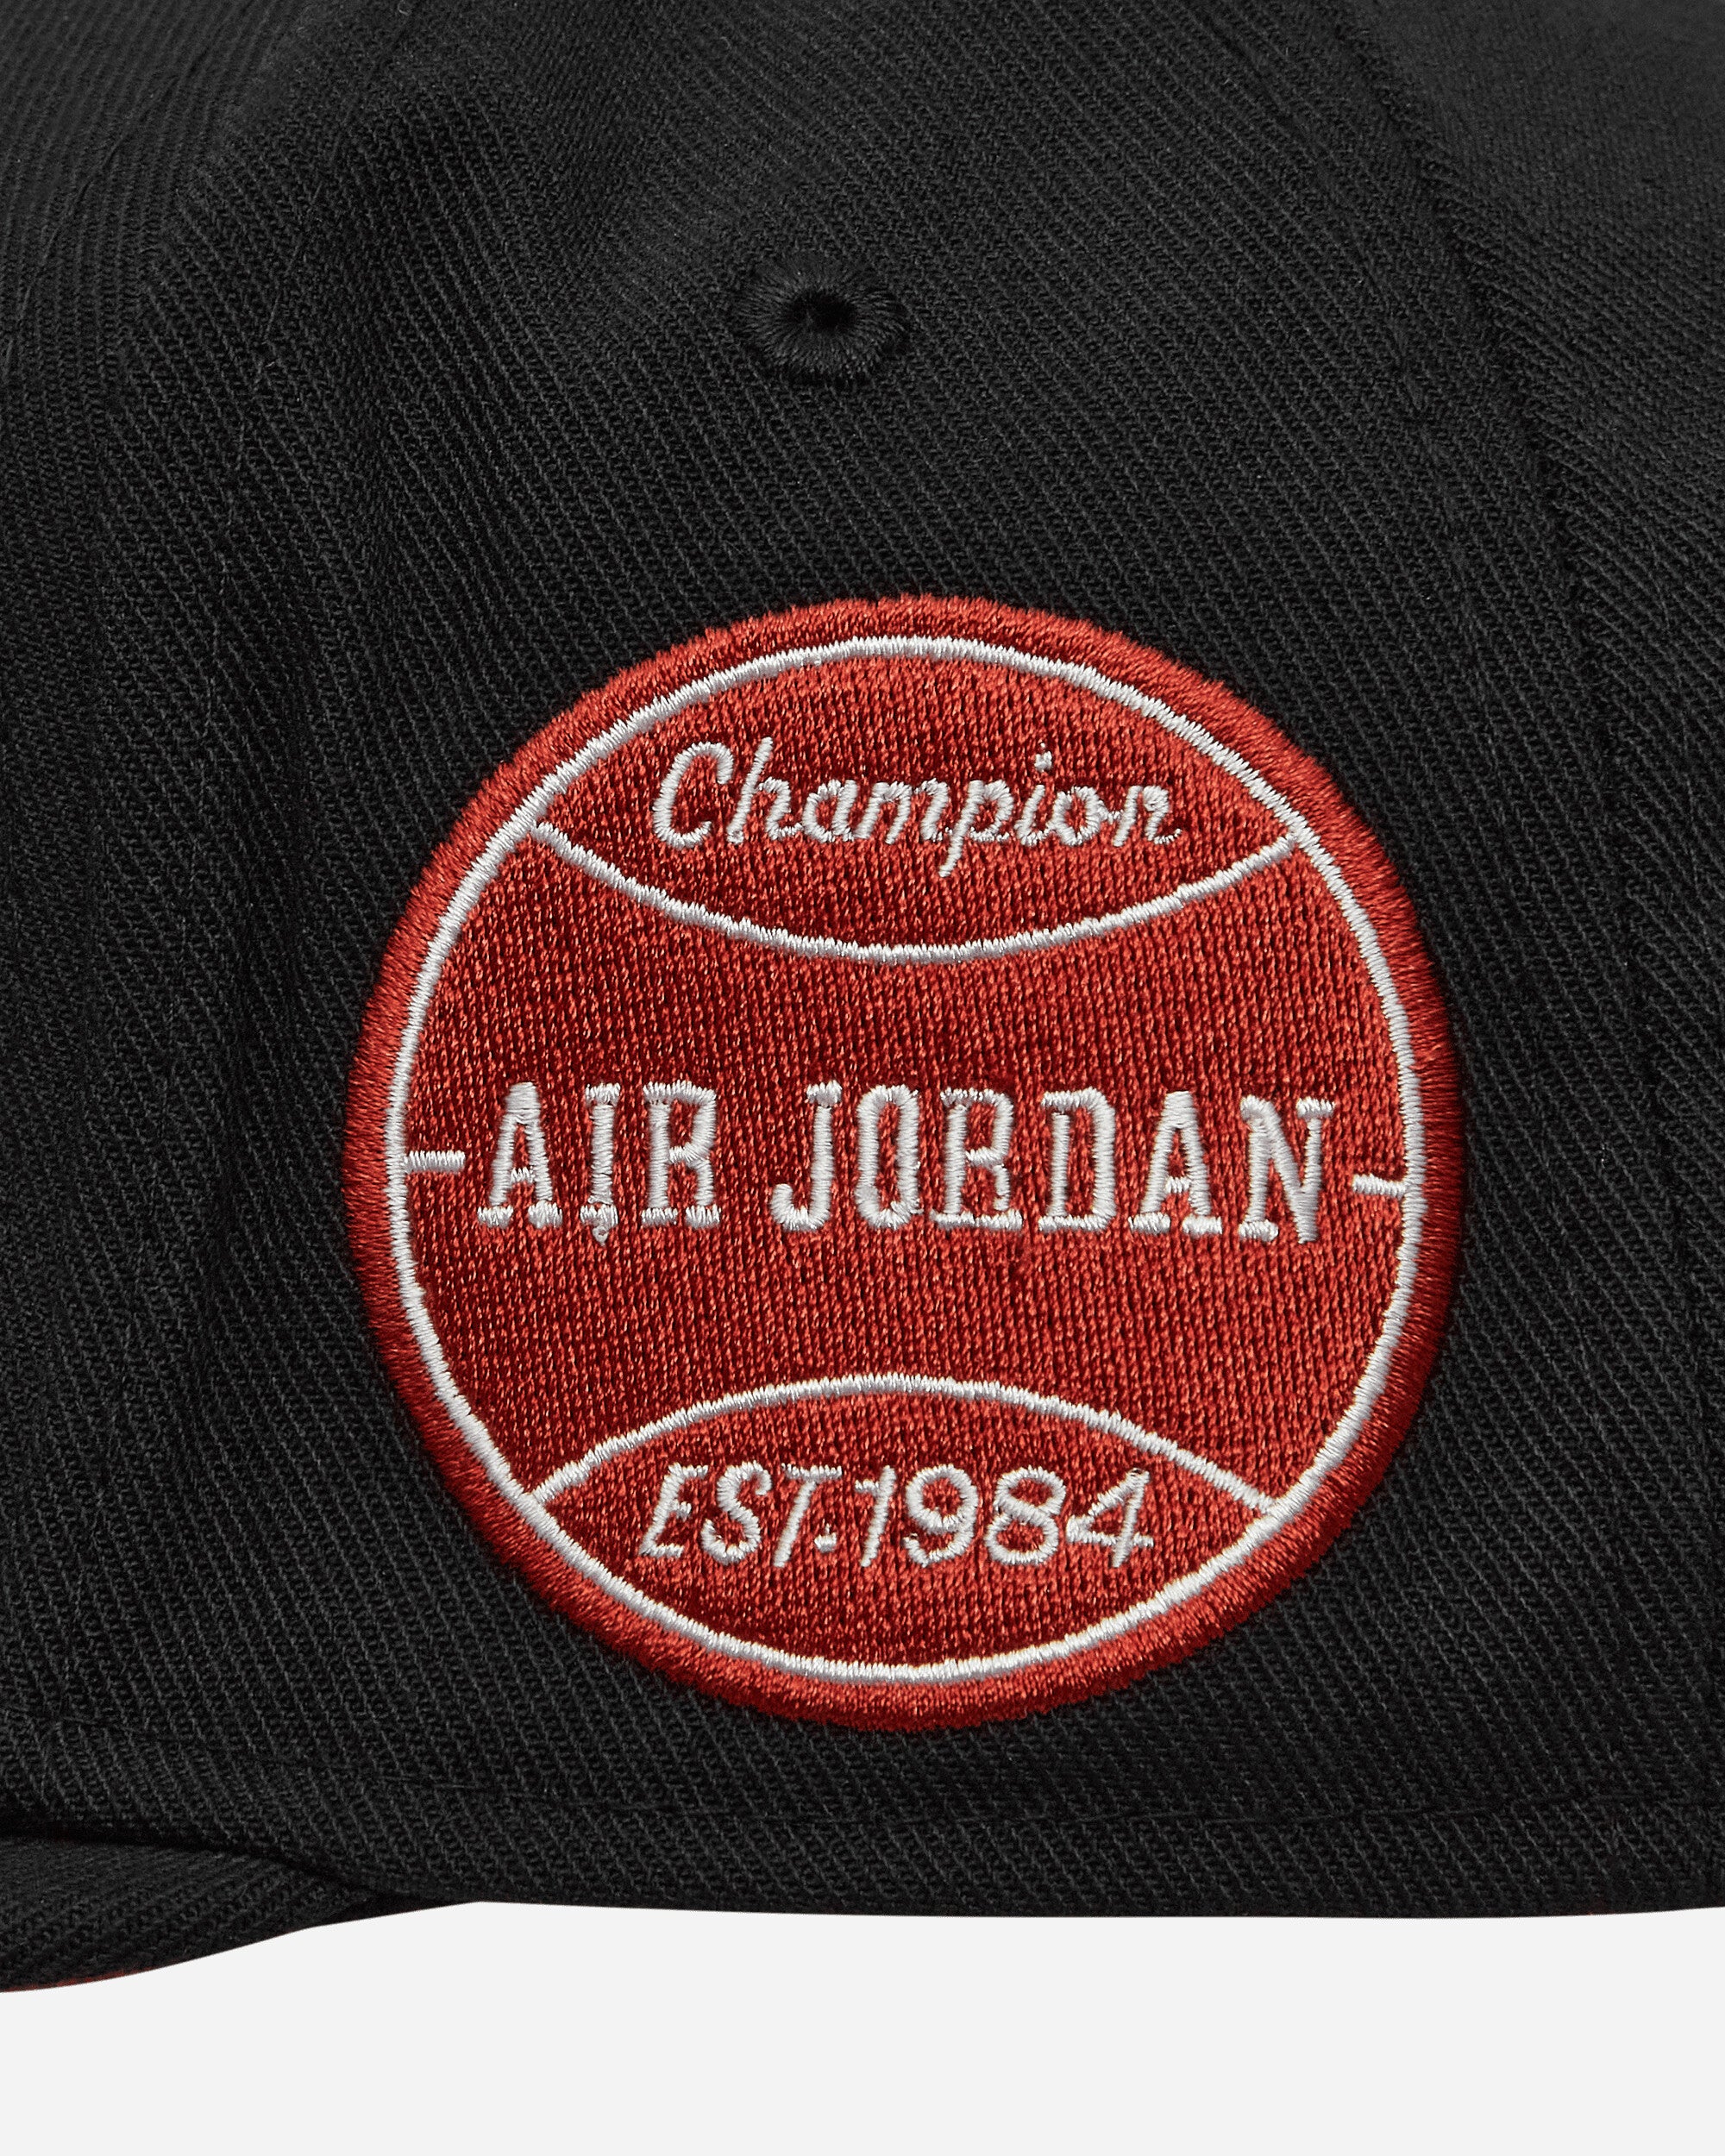 Nike Jordan U J Pro Cap S Fb Flt Mvp Black/Dune Red Hats Caps FV5292-010